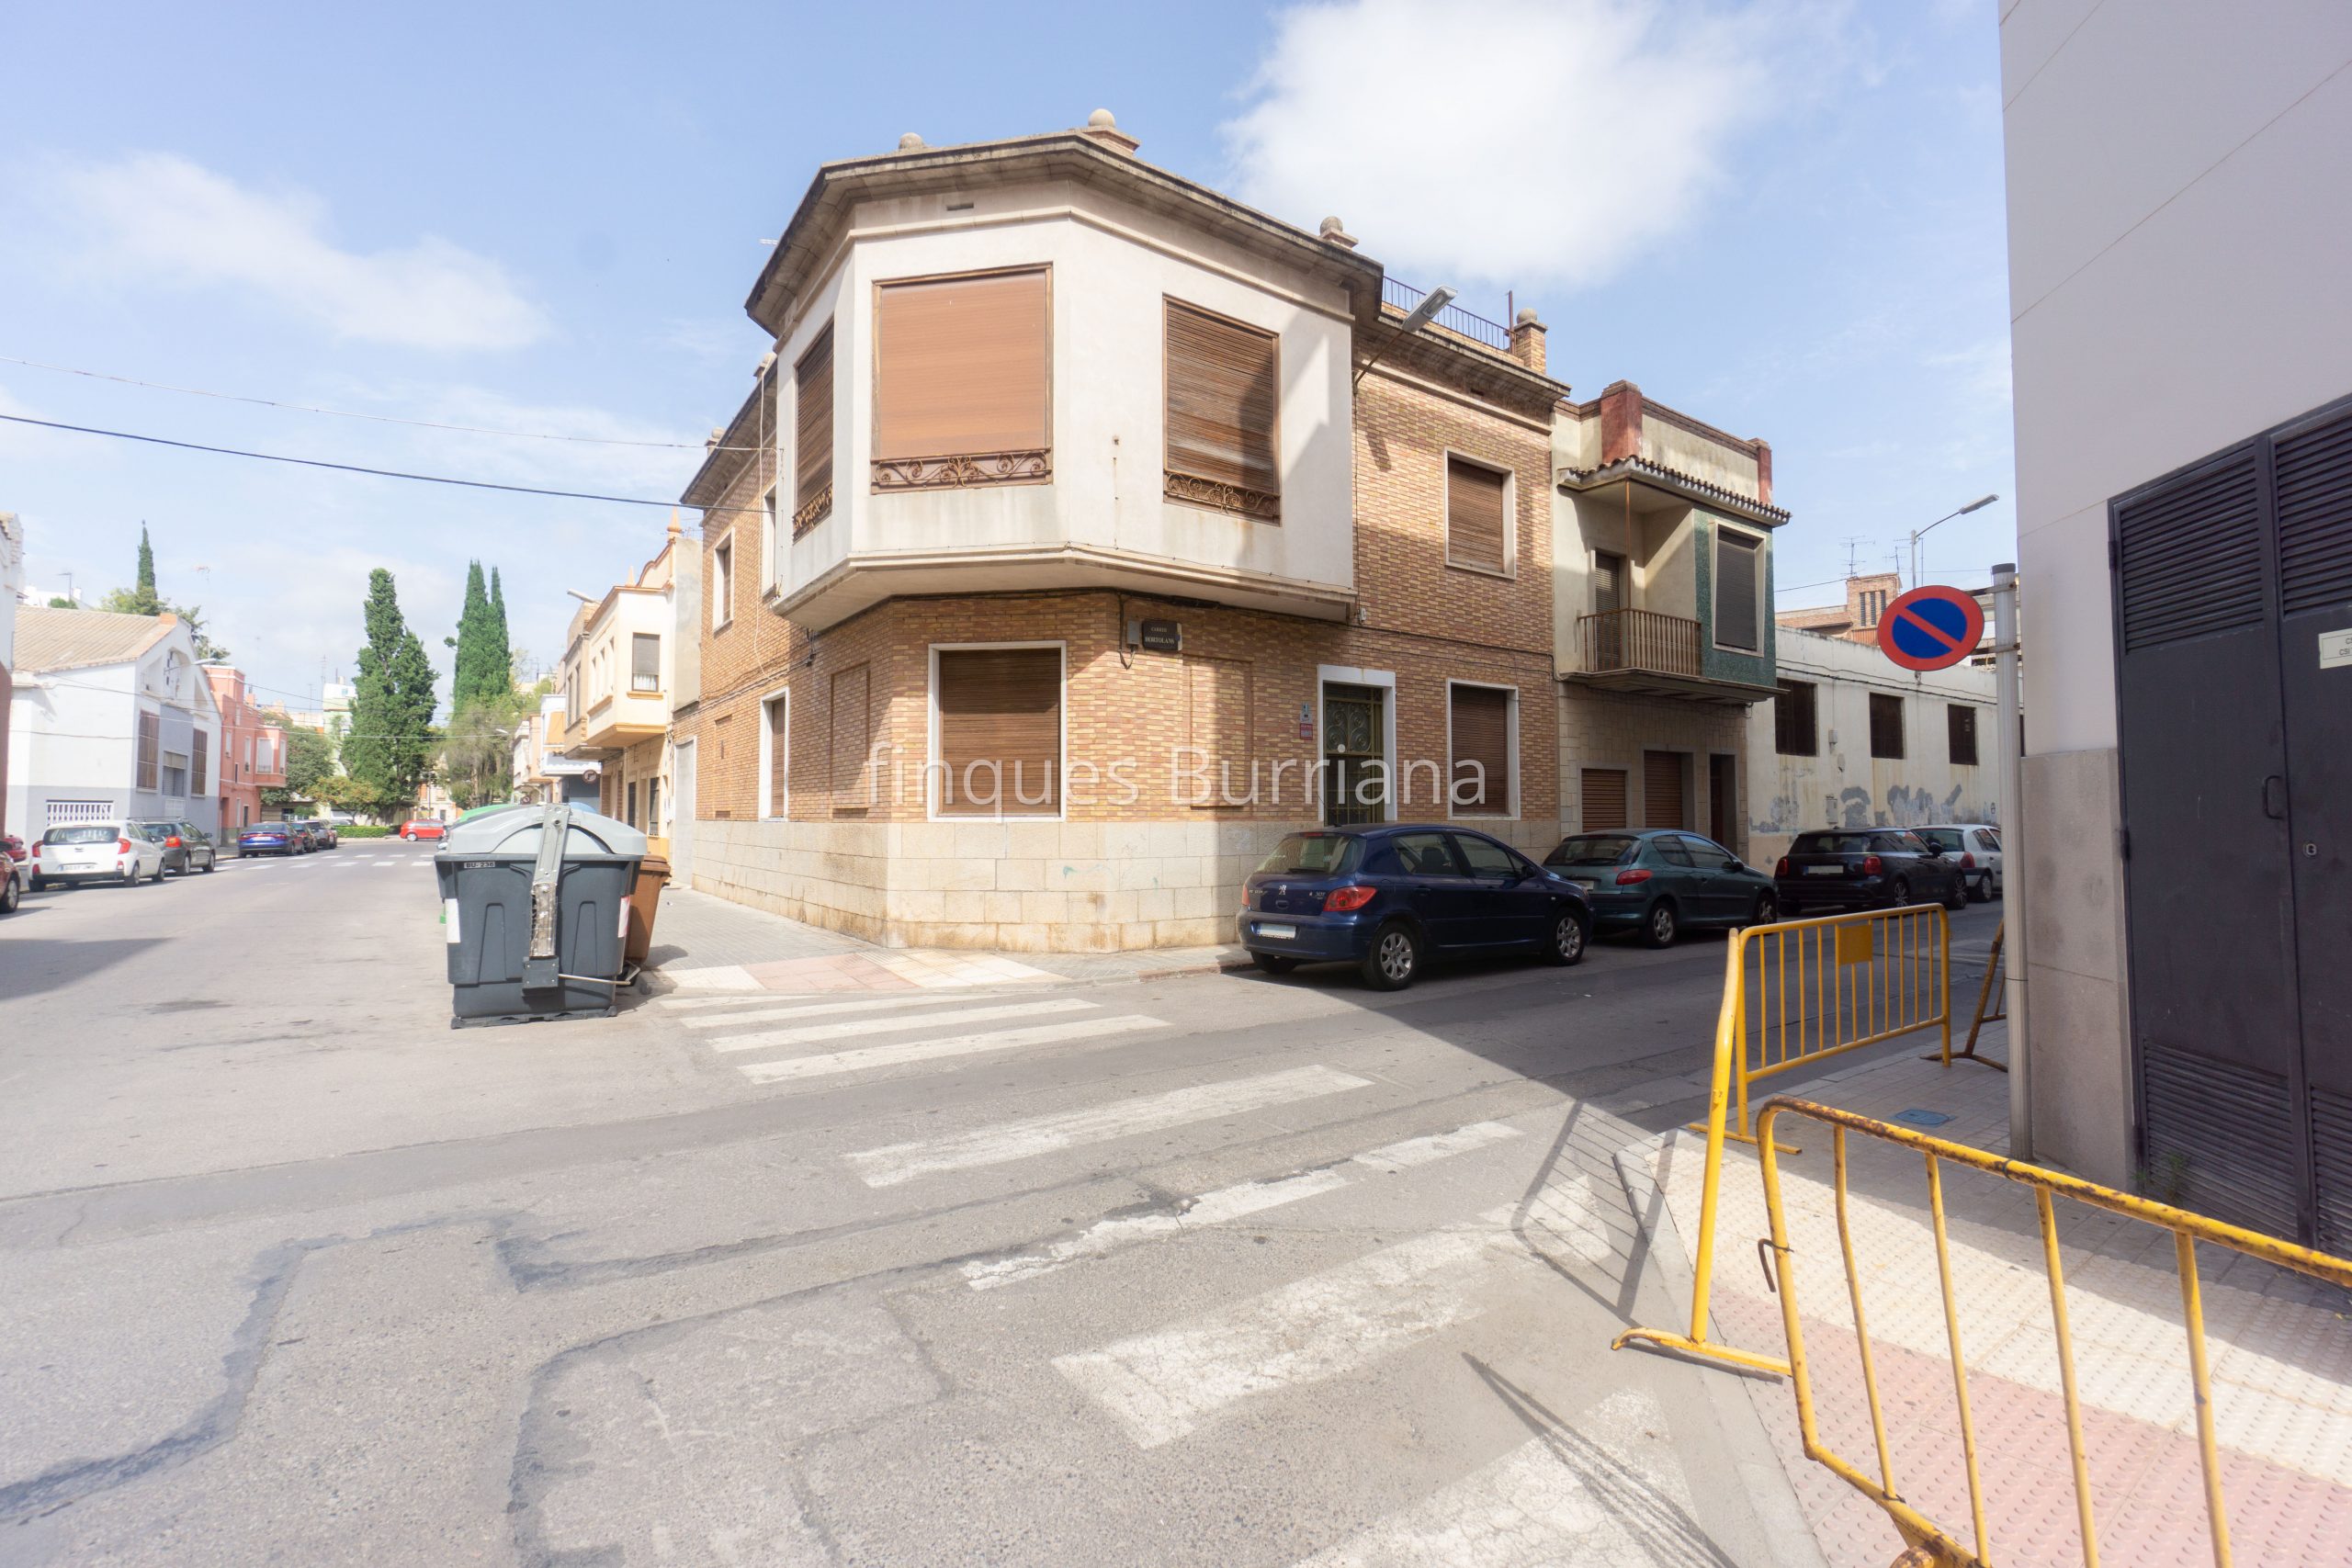 Casa adosada en venta en Burriana (Castellón) zona Camino de Onda